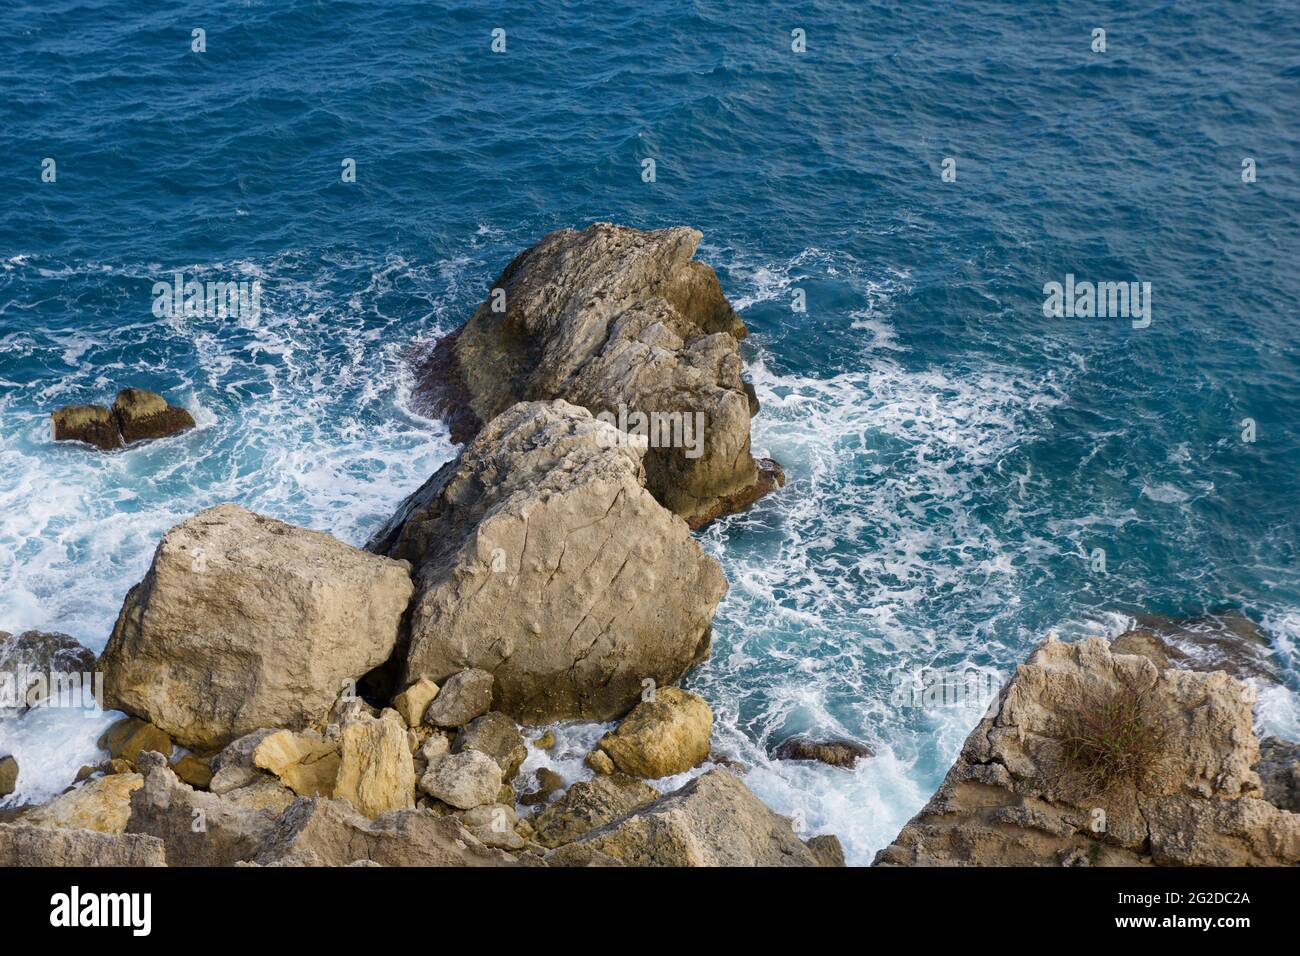 MELLIEHA, MALTA - 01 JAN, 2020: Un primo piano di una roccia vicino all'oceano sull'isola di Malta Foto Stock